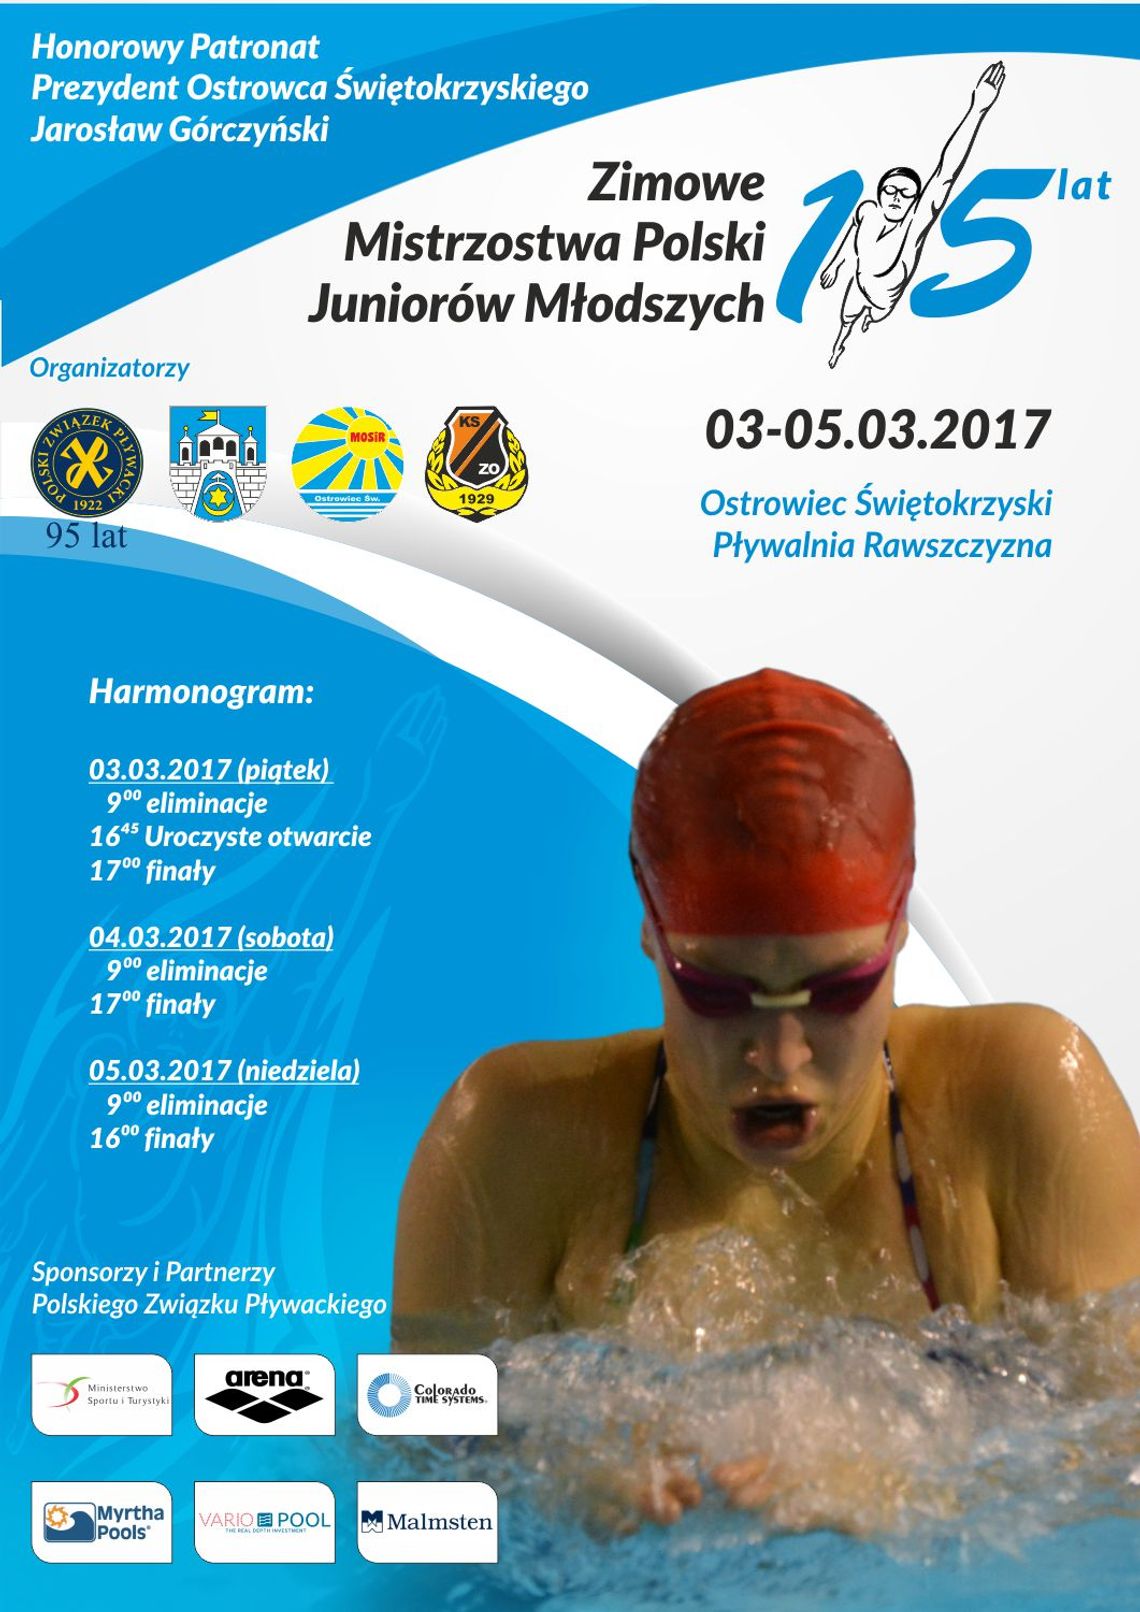 Zimowe Mistrzostwa Polski Juniorów Młodszych 15 lat